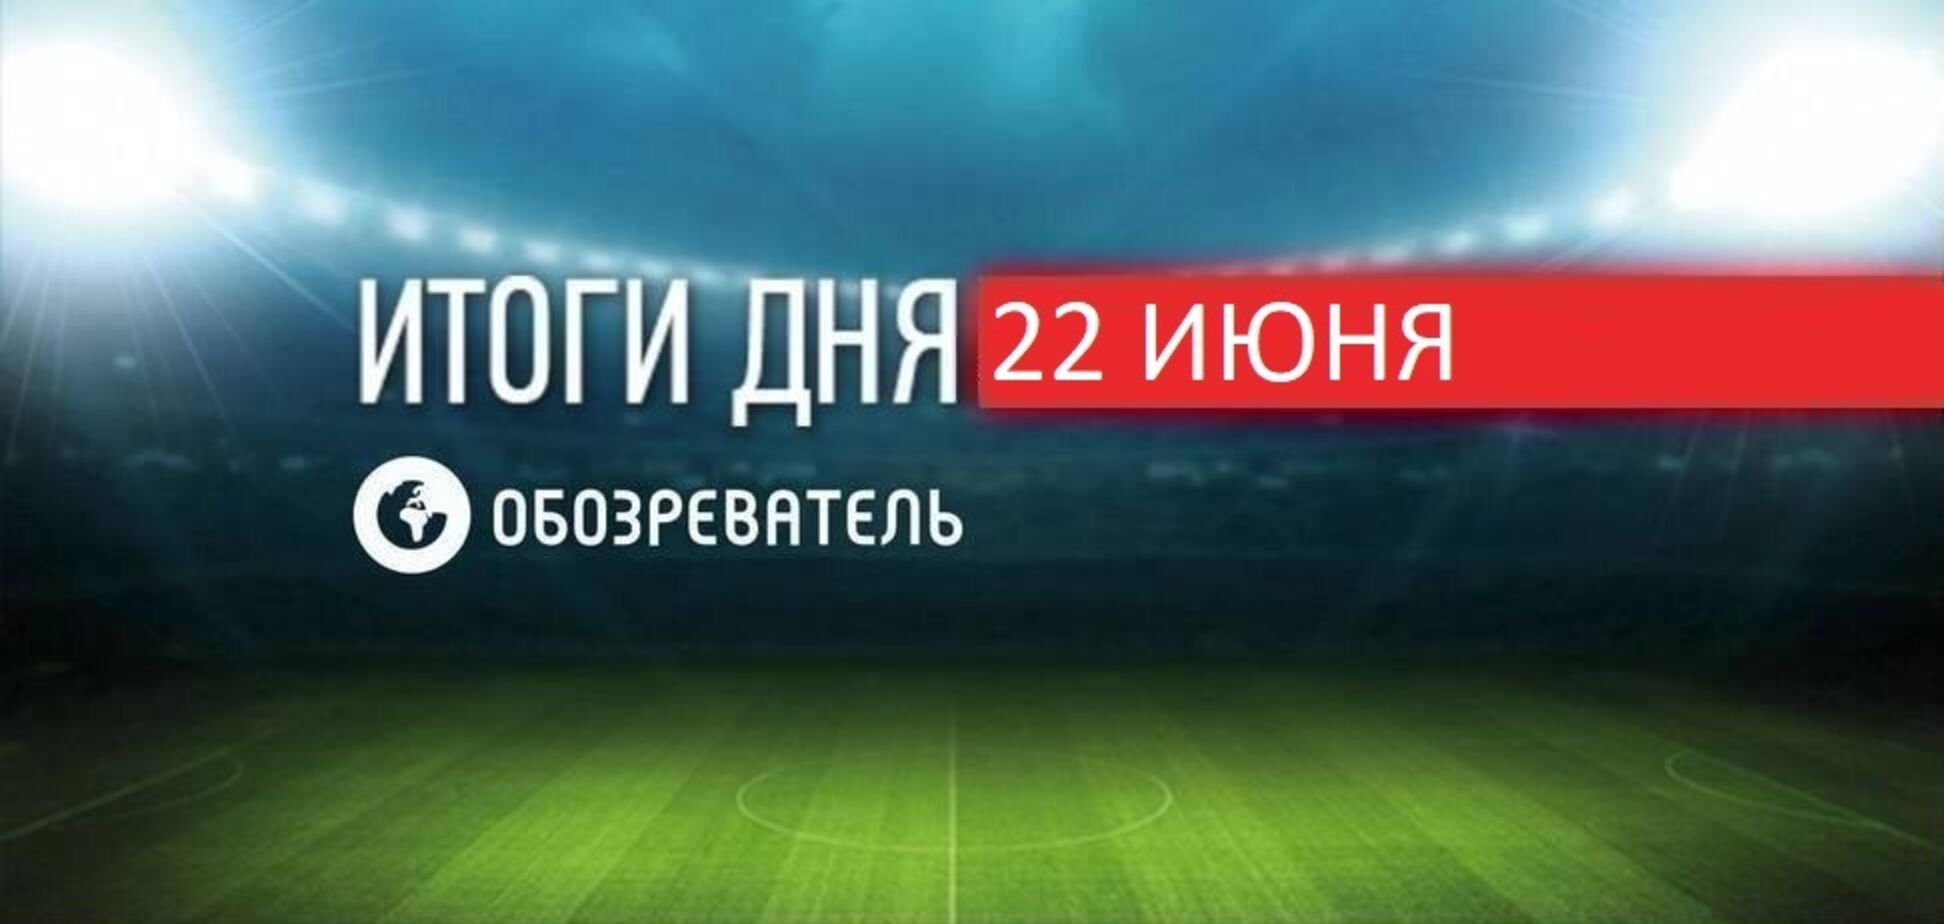 Украинцев не пустили на матч Евро-2020 с картой Крыма: новости спорта 22 июня